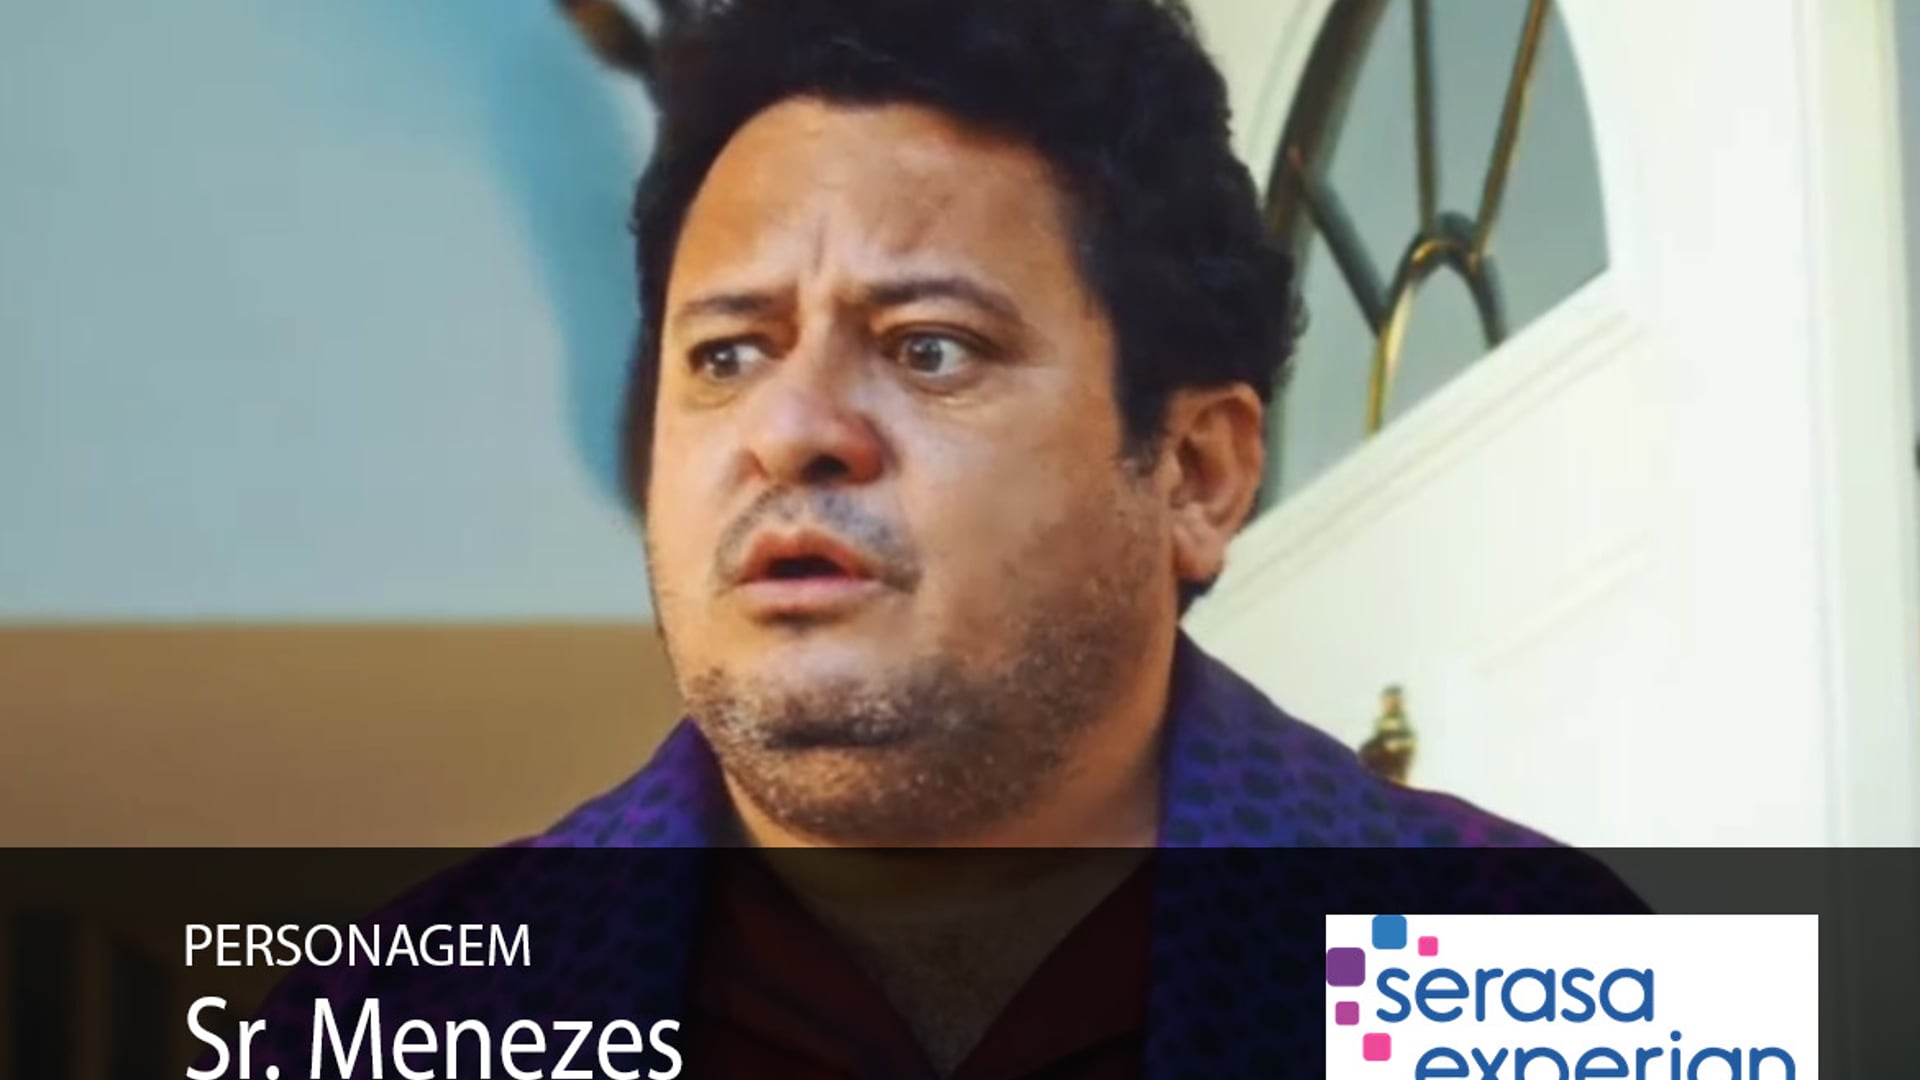 Hilton Castro - comercial "Serasa" personagem: Sr. Menezes